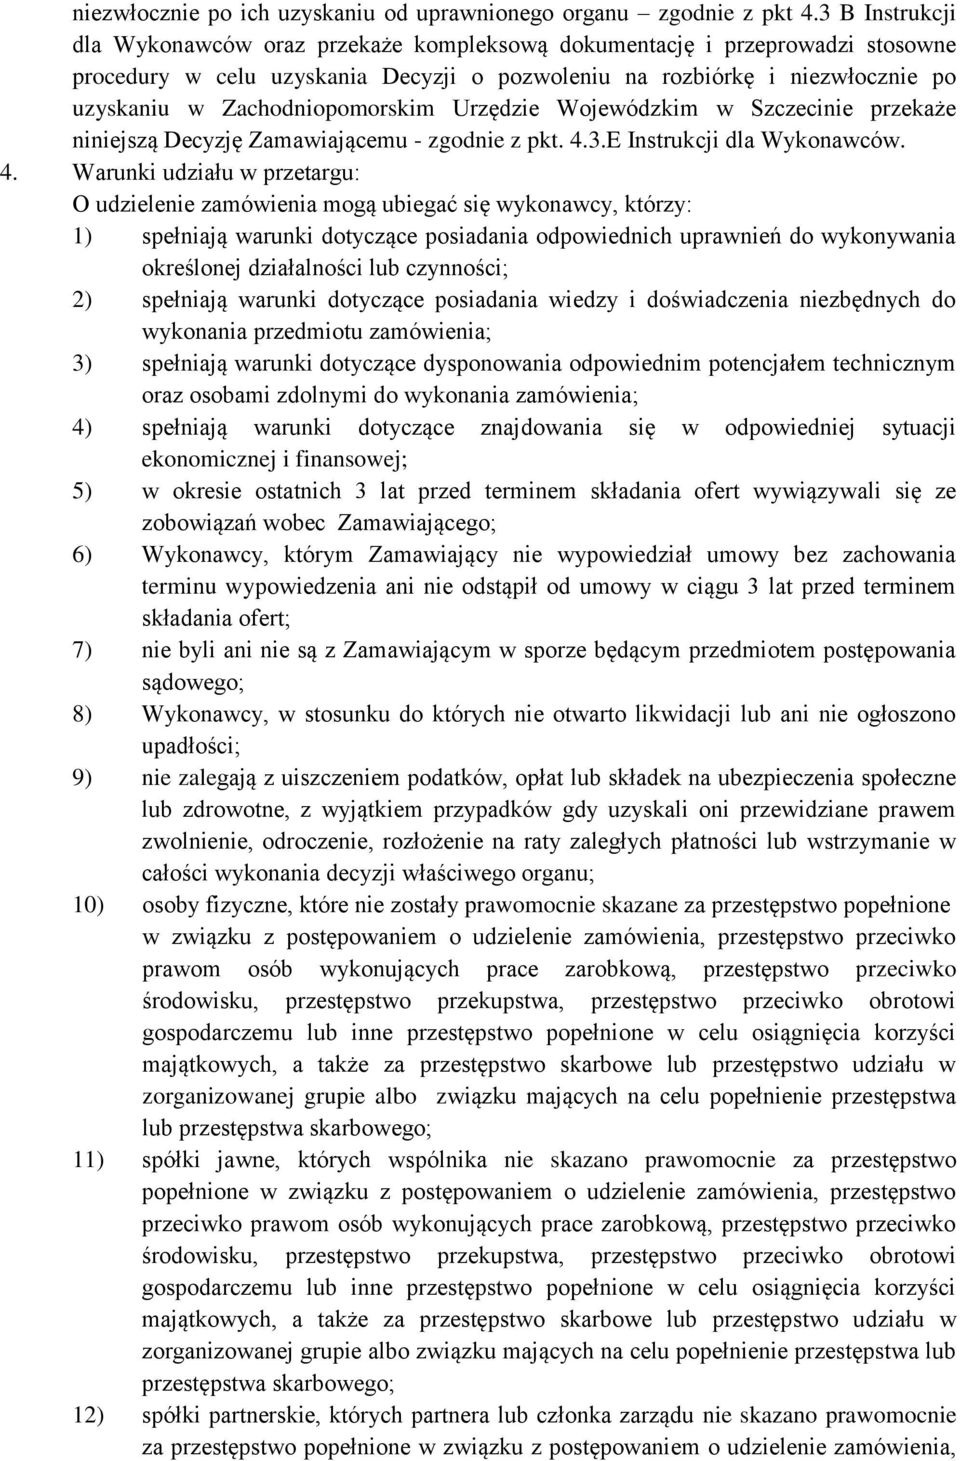 Zachodniopomorskim Urzędzie Wojewódzkim w Szczecinie przekaże niniejszą Decyzję Zamawiającemu - zgodnie z pkt. 4.